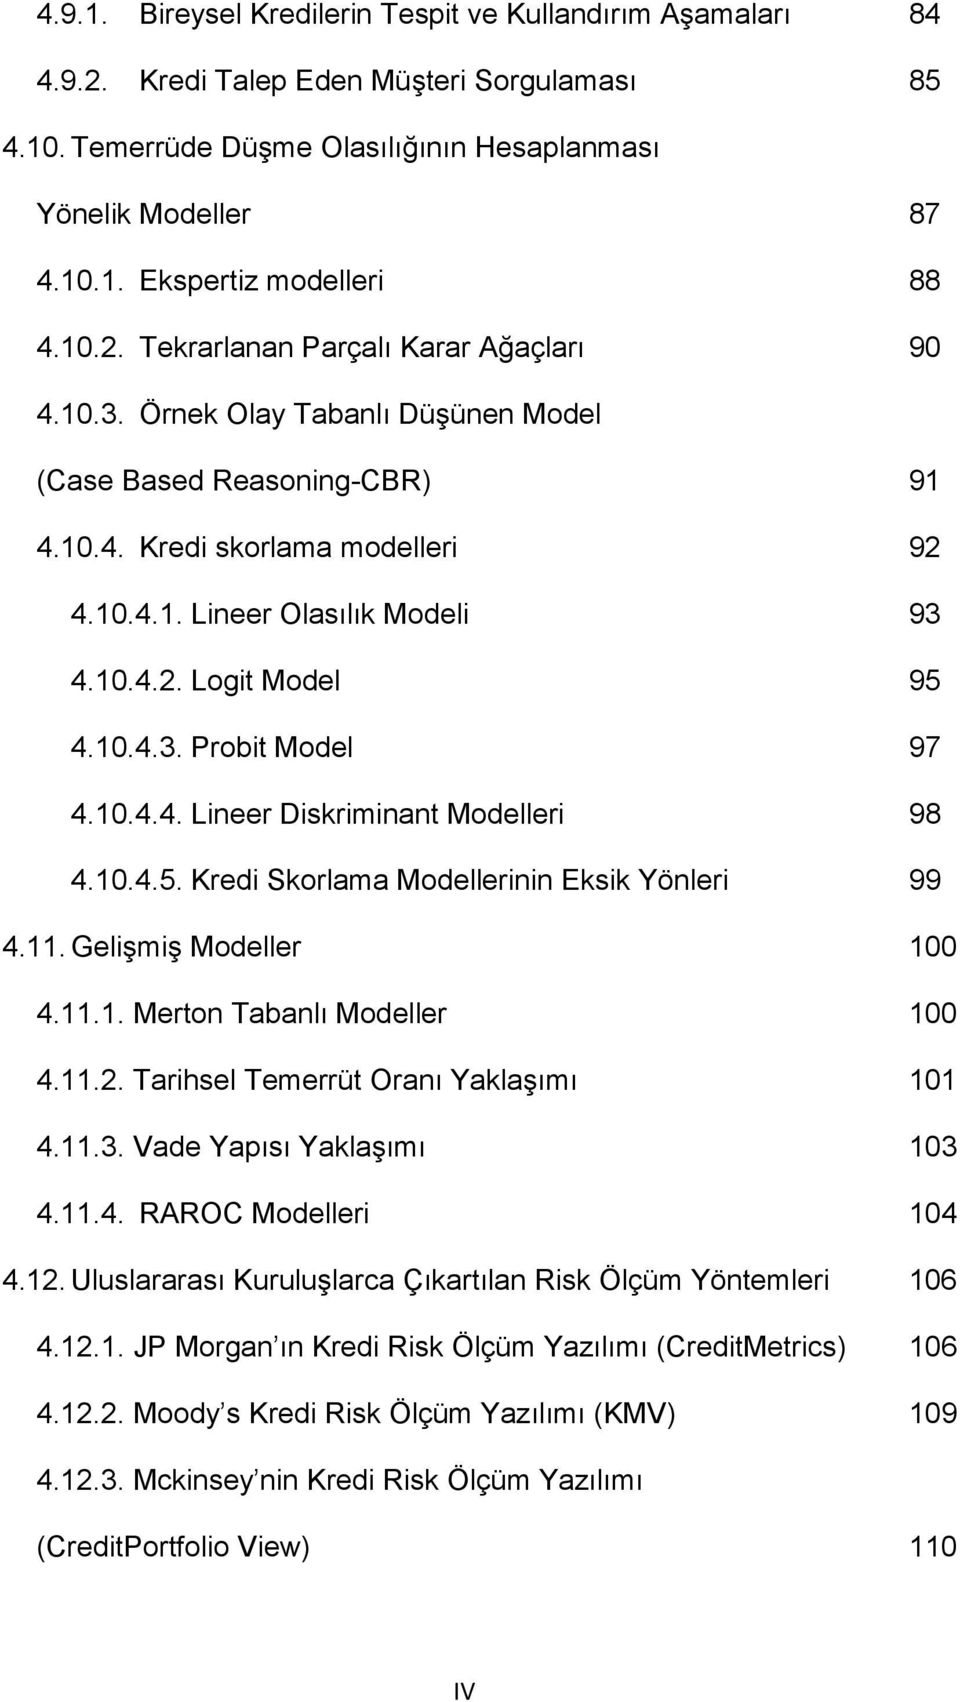 10.4.3. Probit Model 97 4.10.4.4. Lineer Diskriminant Modelleri 98 4.10.4.5. Kredi Skorlama Modellerinin Eksik Yönleri 99 4.11. Gelişmiş Modeller 100 4.11.1. Merton Tabanlı Modeller 100 4.11.2.